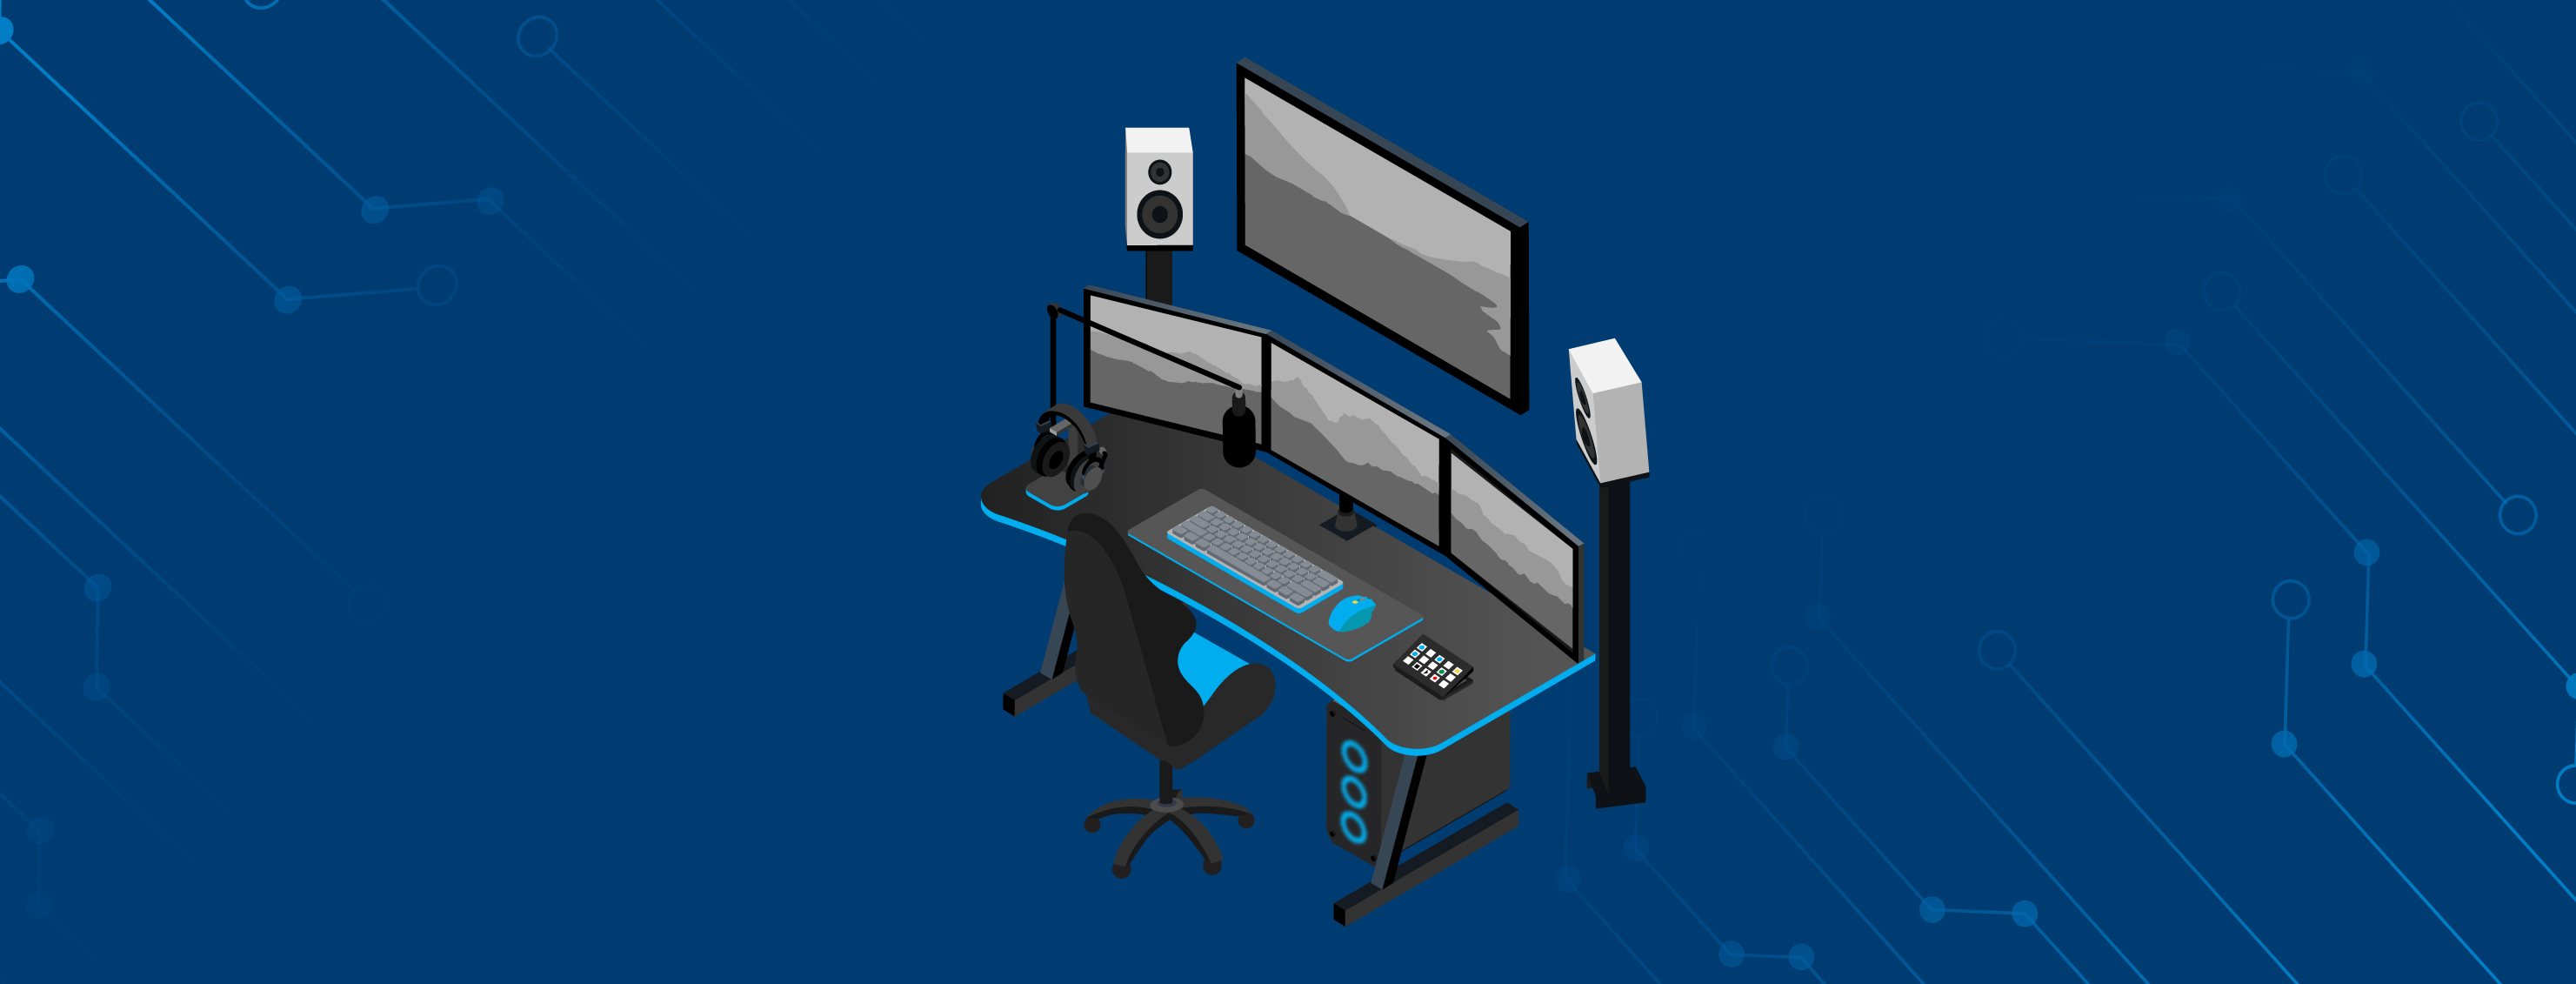 Wide Smart™ Gaming Desk